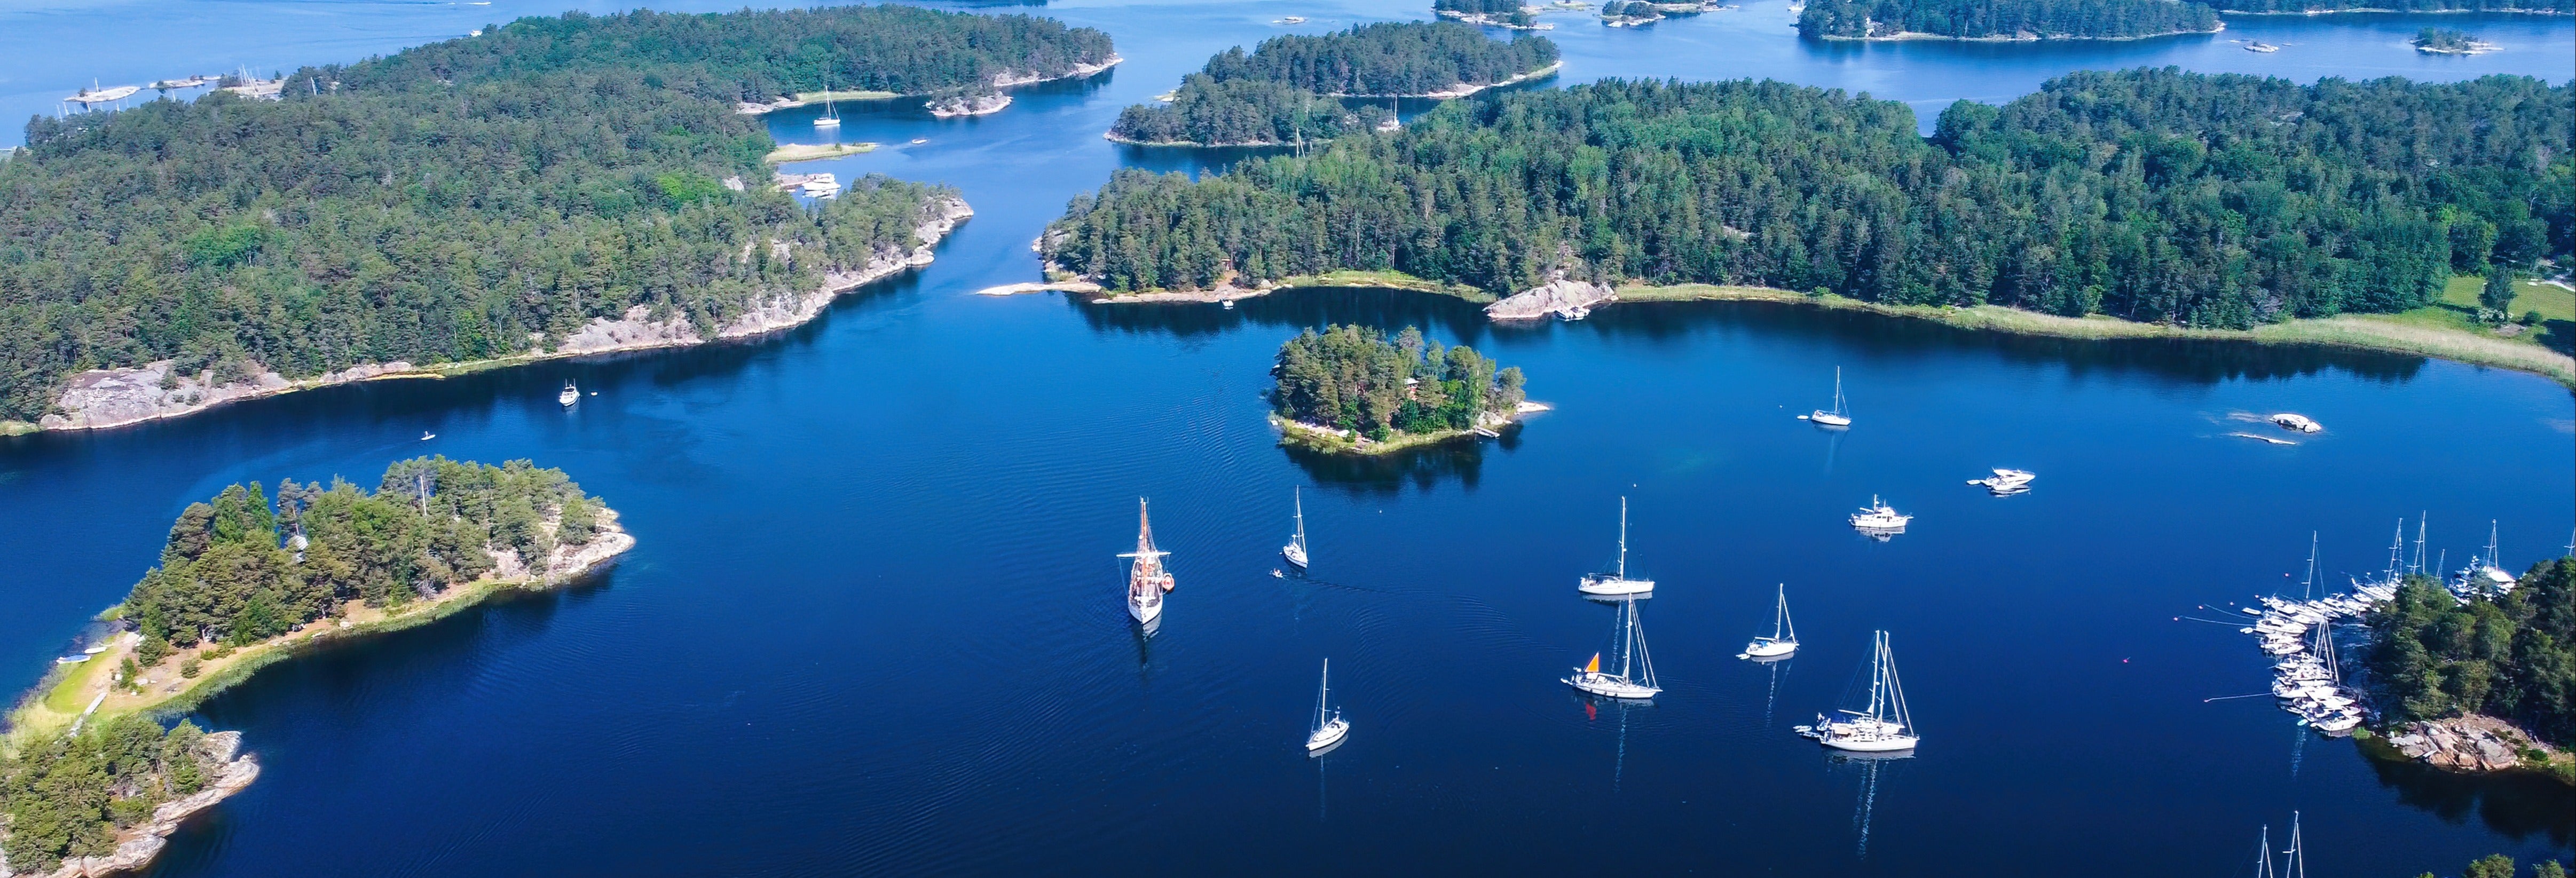 Paseo en barco por el archipiélago de Estocolmo